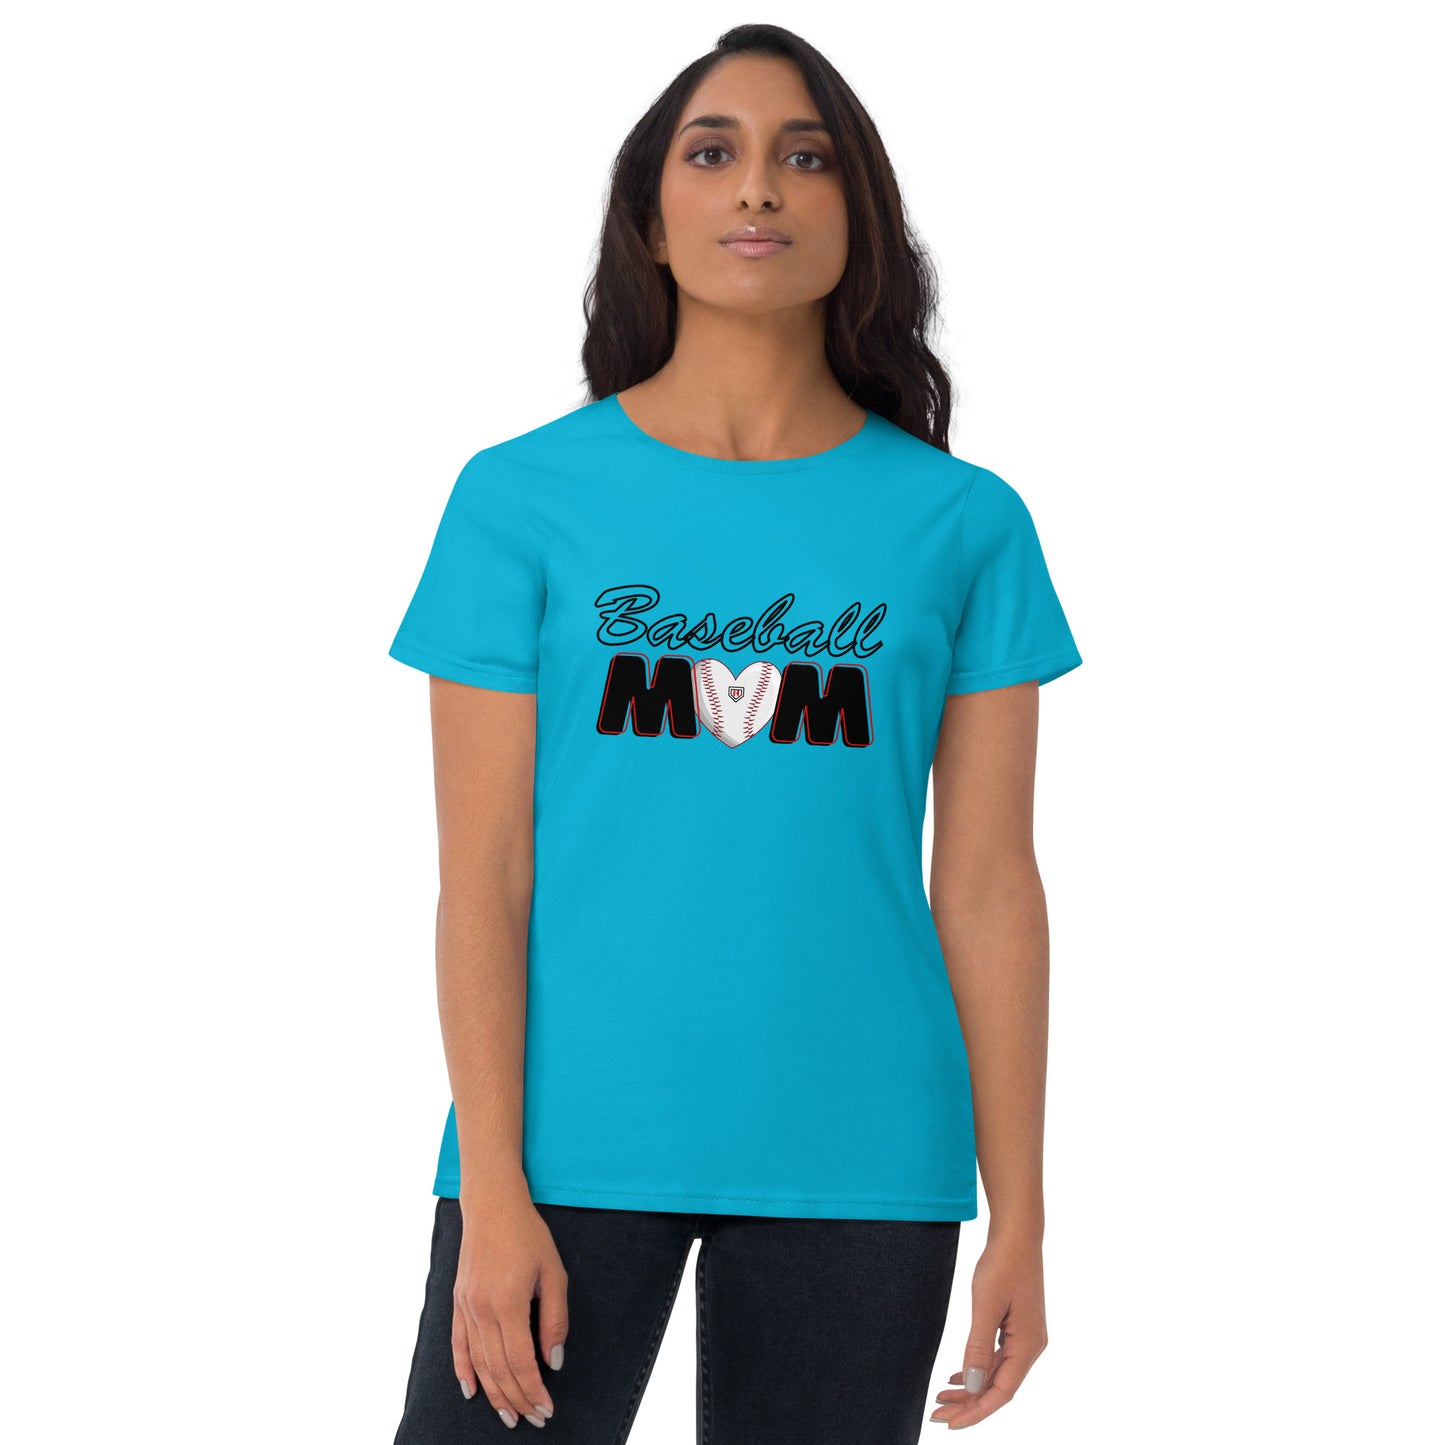 Baseball Mom Women's short sleeve t-shirt